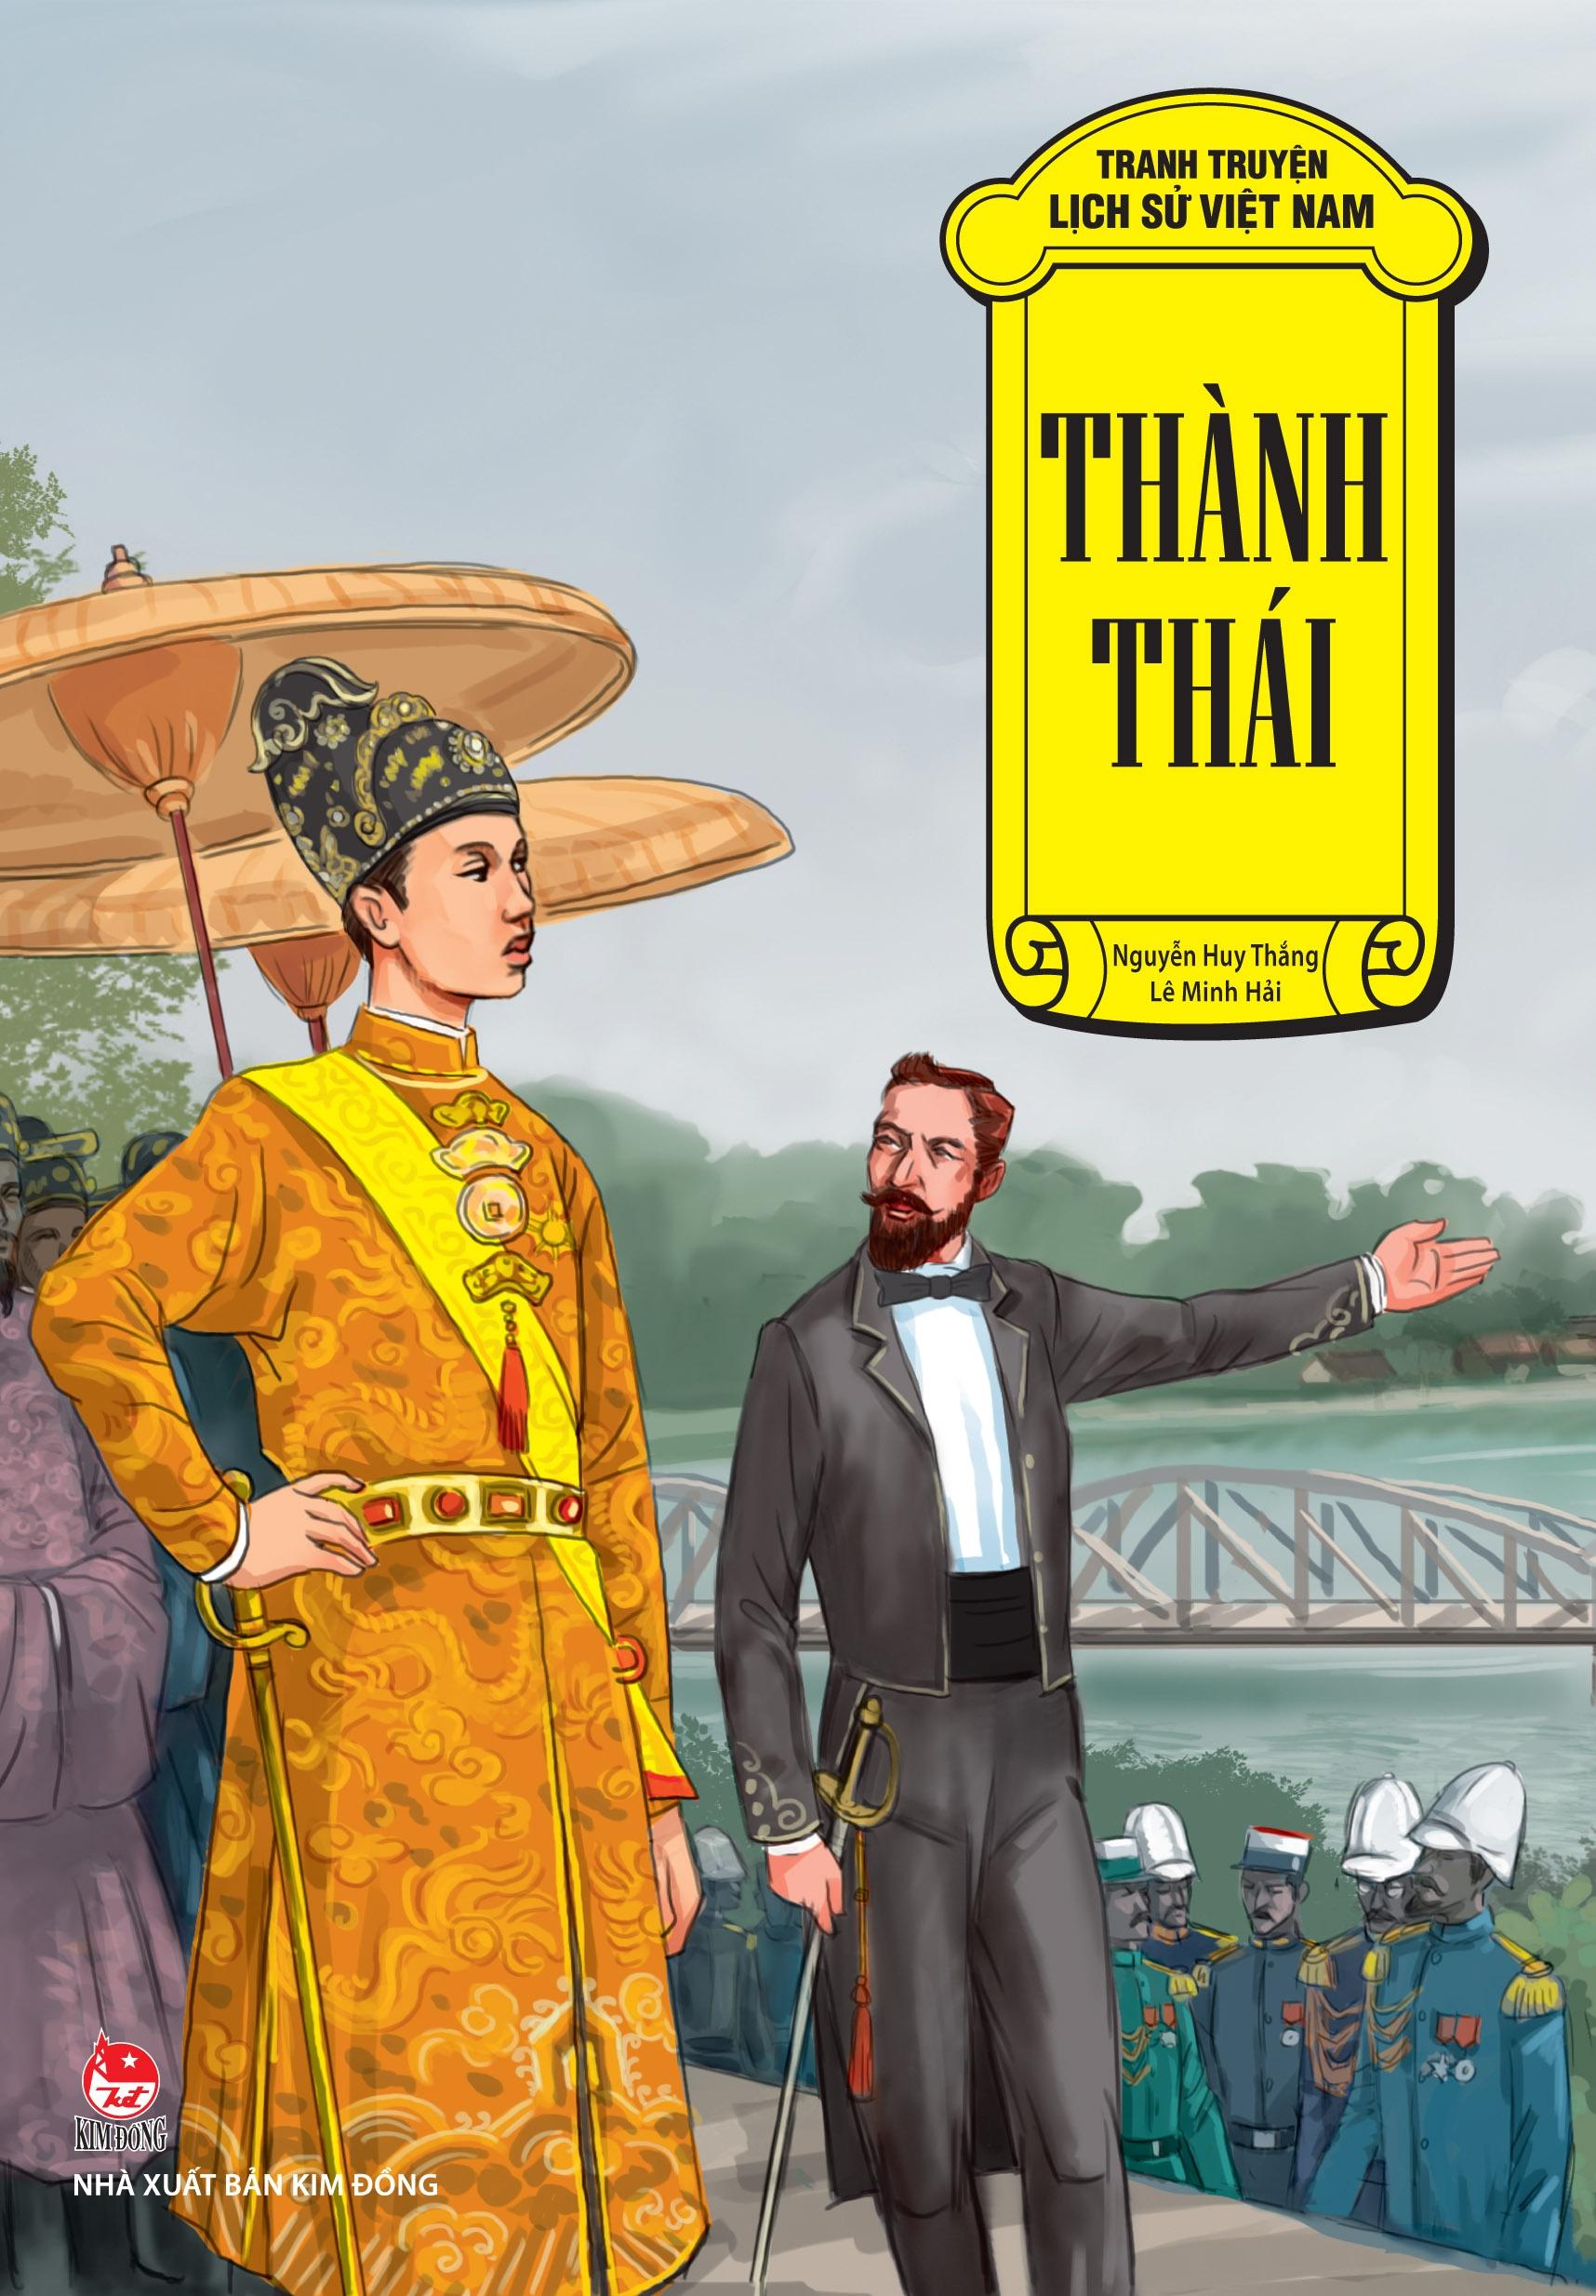 Tranh Truyện Lịch Sử Việt Nam: Thành Thái